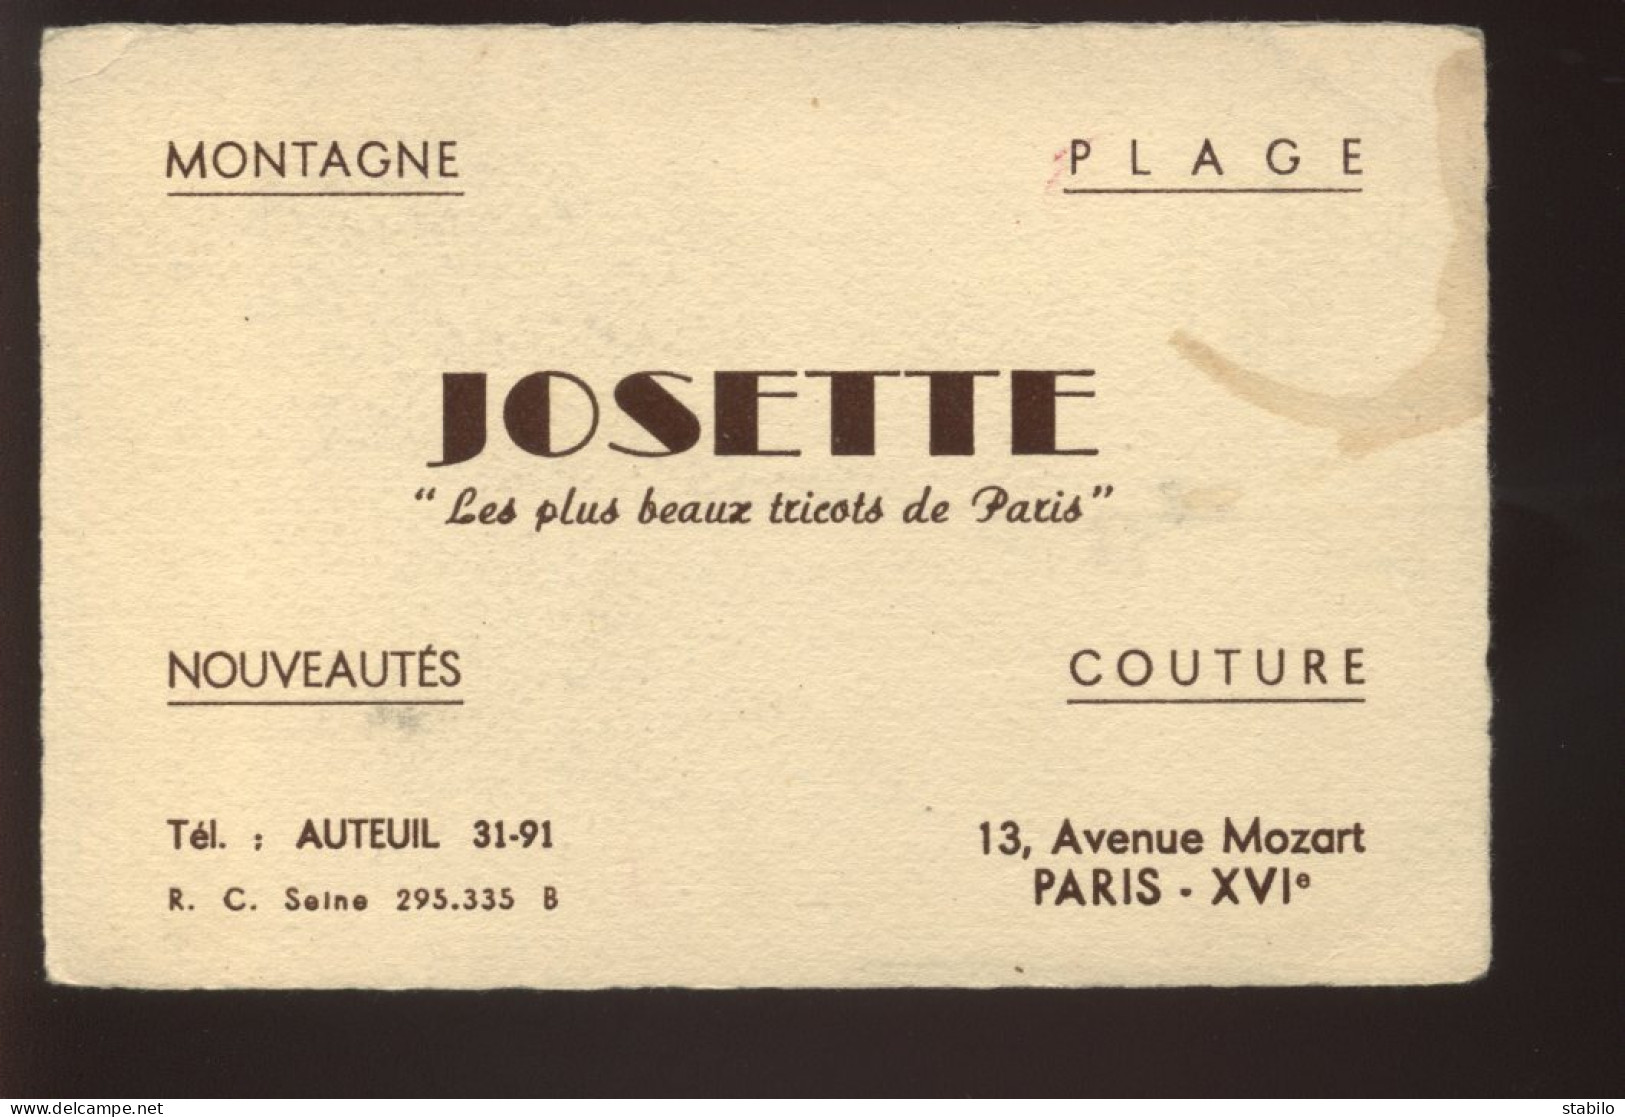 CARTES DE VISITE - PARIS 16EME - "JOSETTE" TRICOTS, 13 AVENUE MOZART - Cartes De Visite